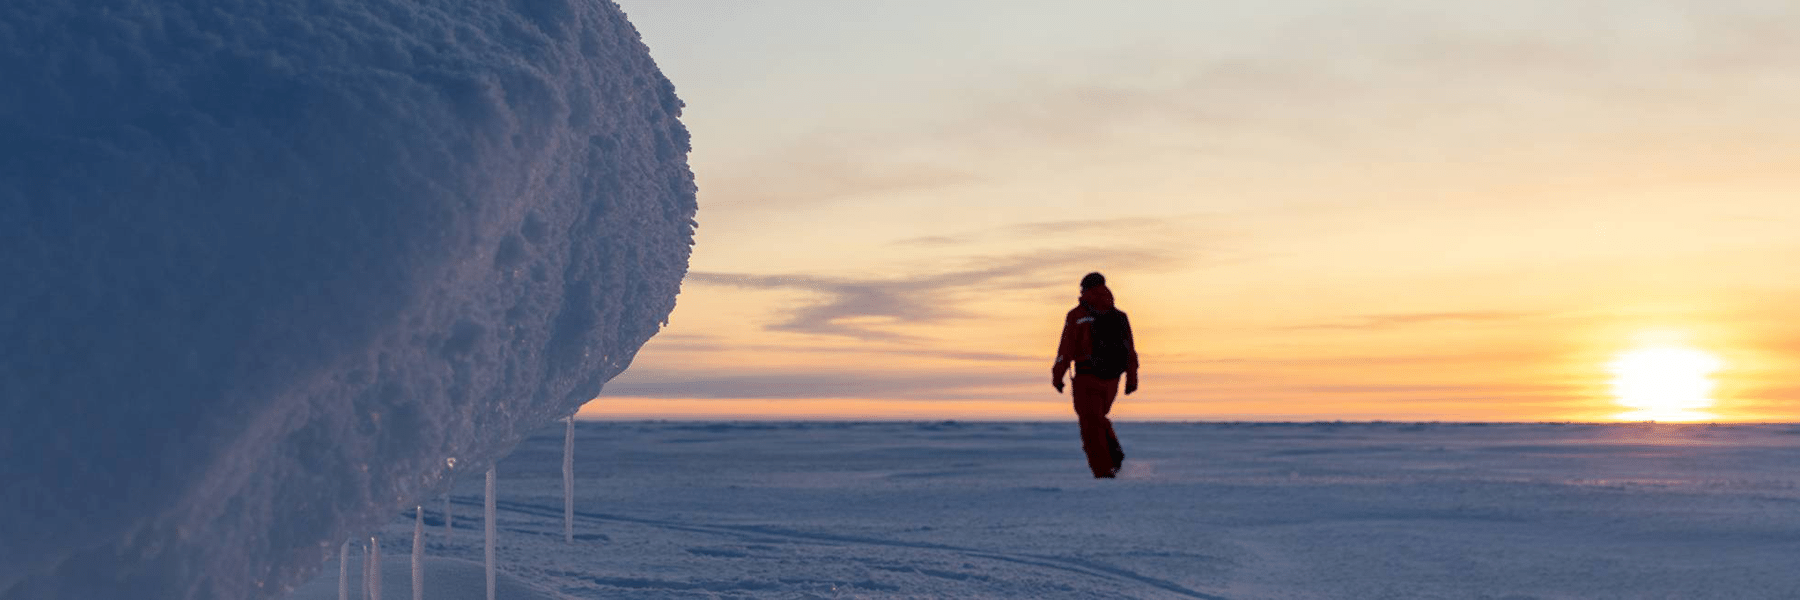 Man walking across frozen landscape